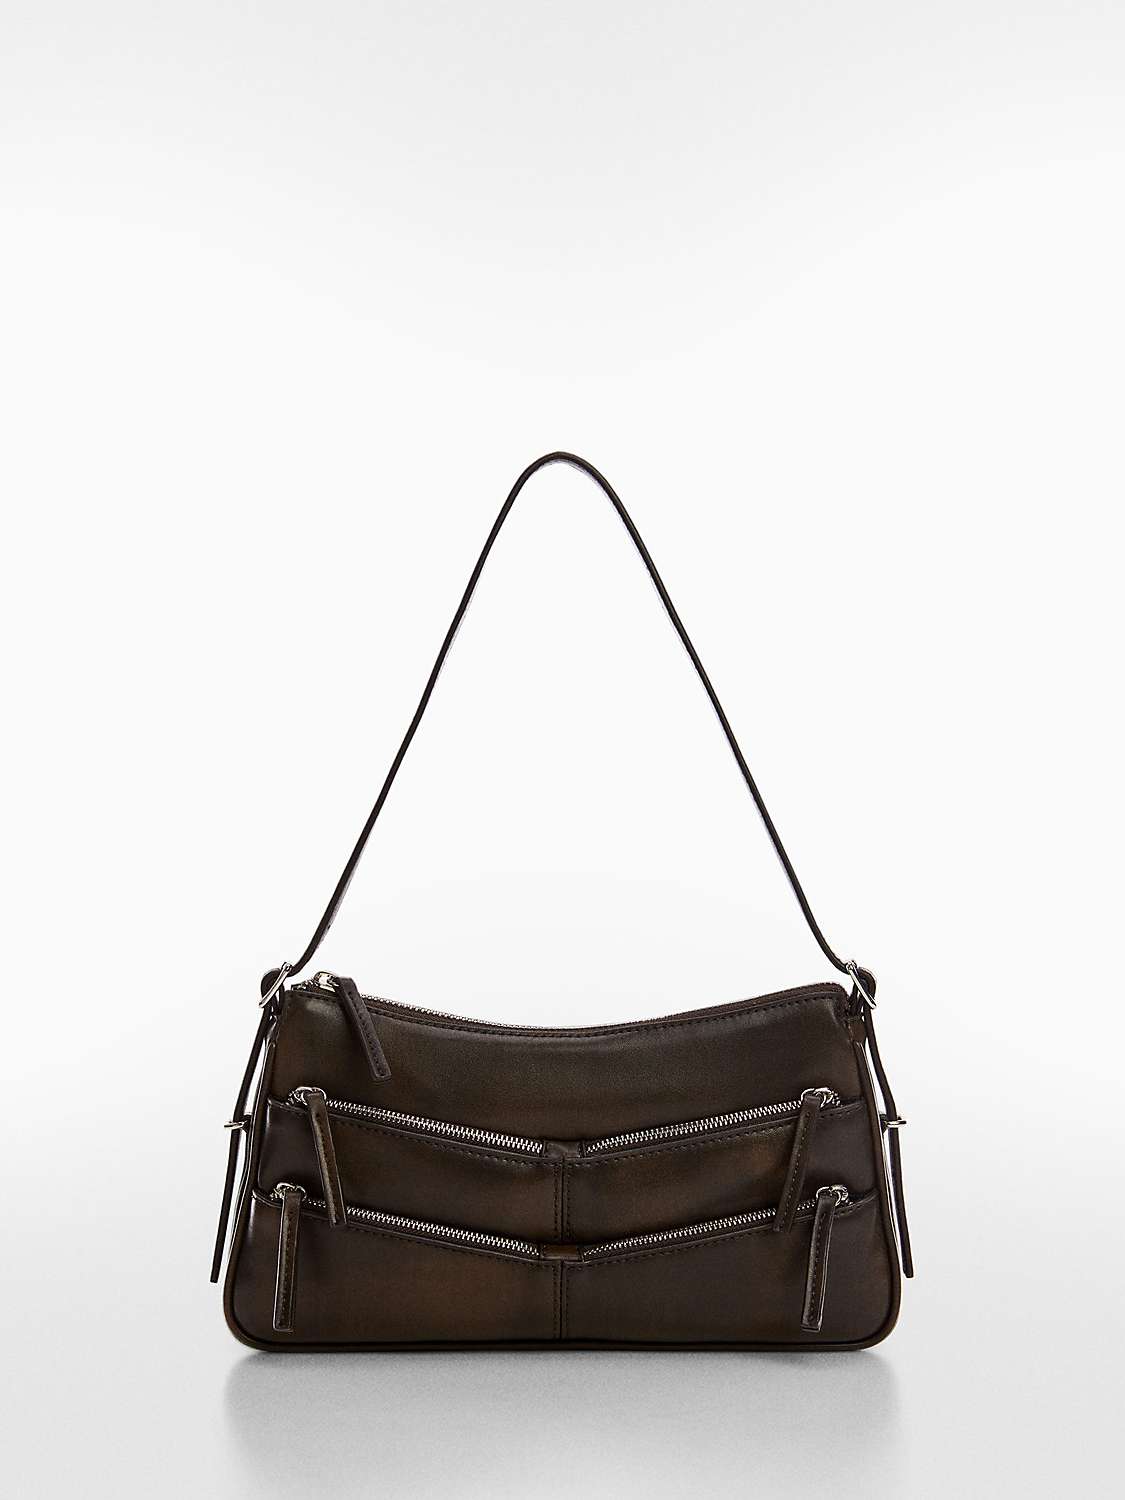 Buy Mango Manuela Zip Detail Shoulder Bag, Charcoal Online at johnlewis.com